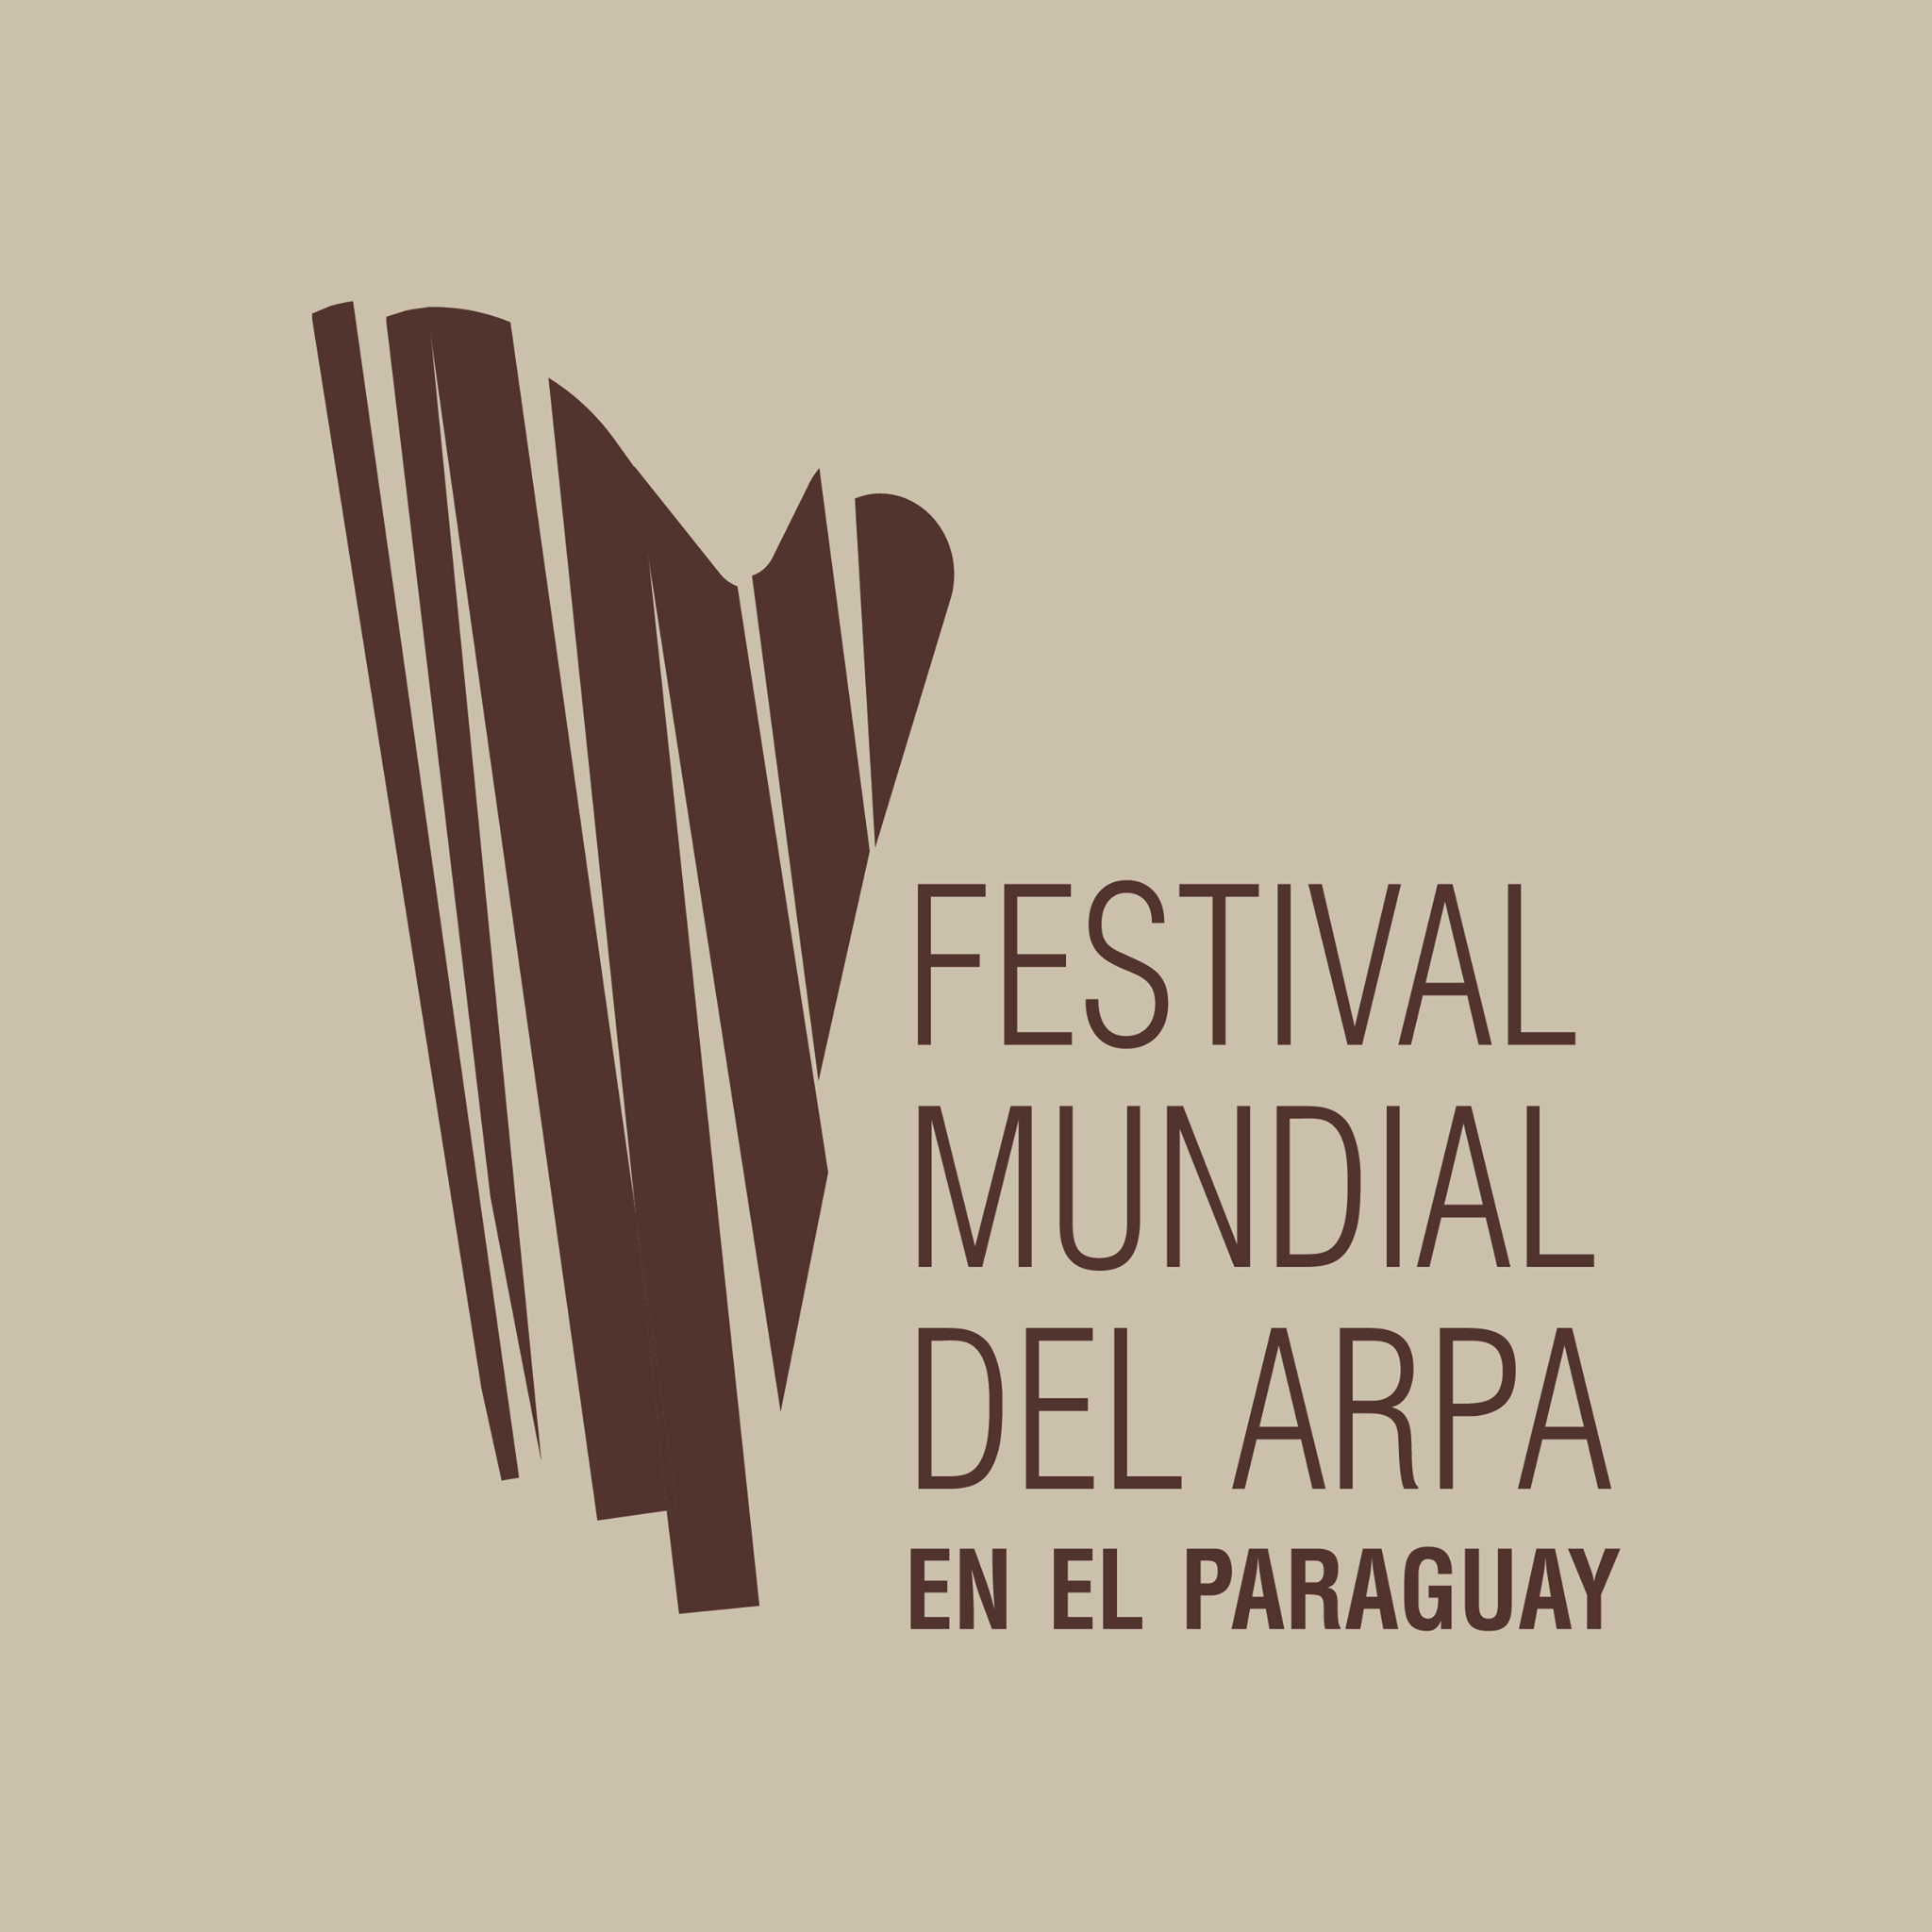 El XIII Festival Mundial del Arpa en el Paraguay será exclusivamente con artistas nacionales imagen